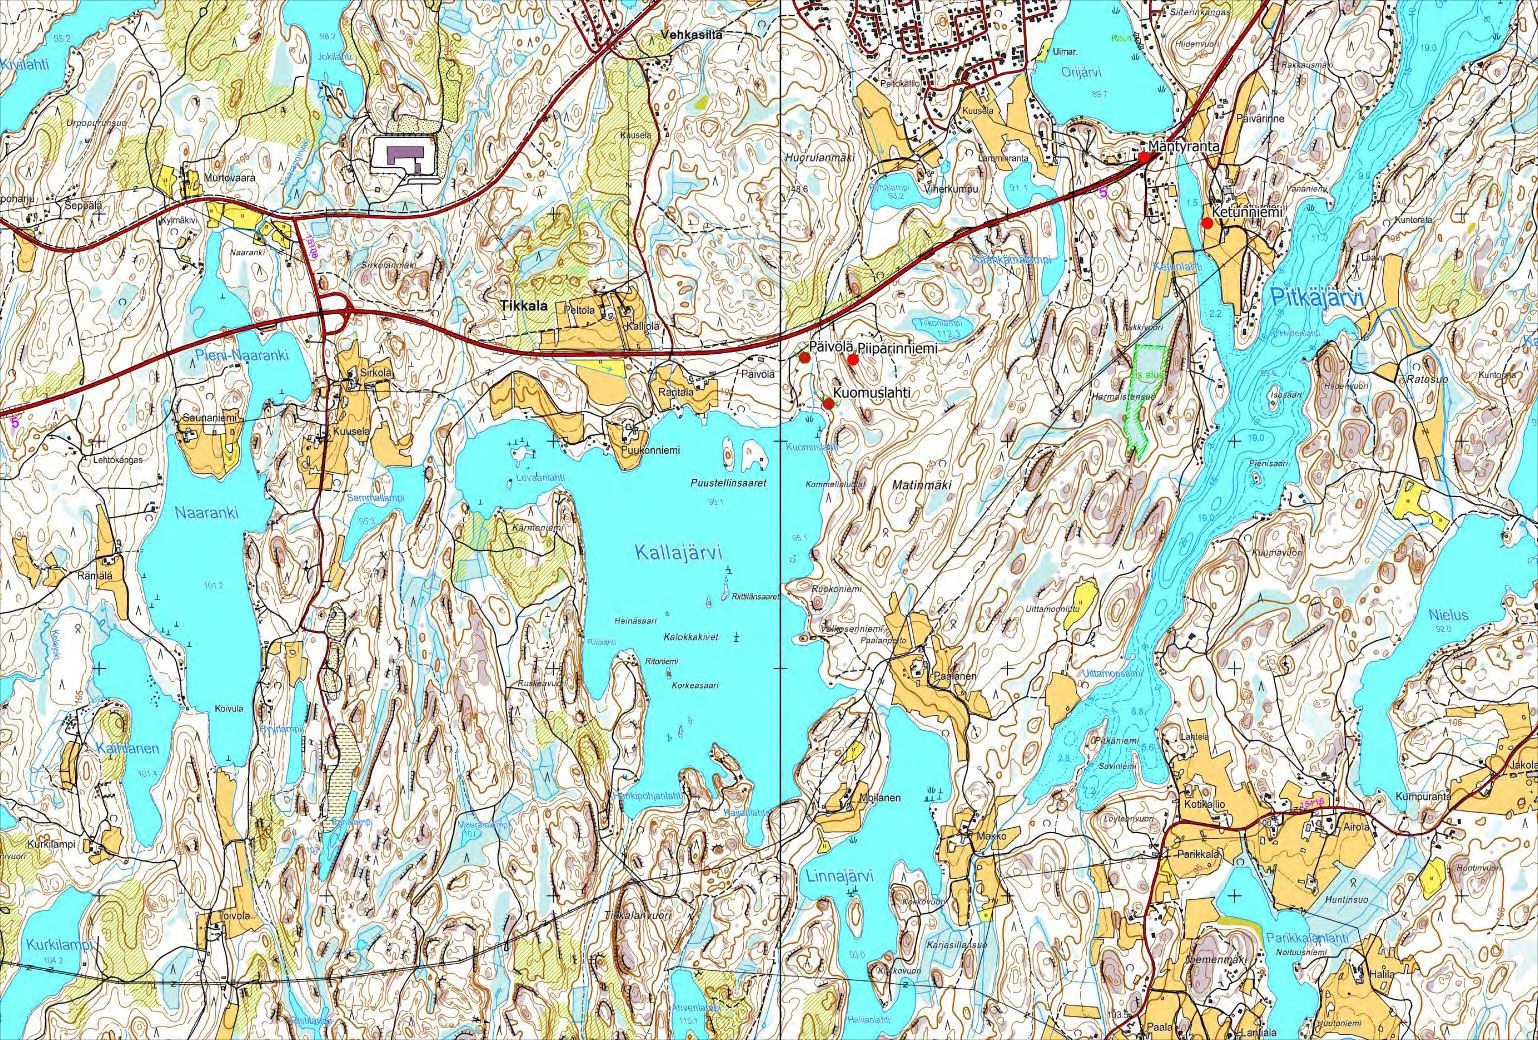 5. Inventointialueen kartat kohteineen 9 Kartta 1. Inventointialueen pohjoisosaa välillä Tikkala-Orijärvi.